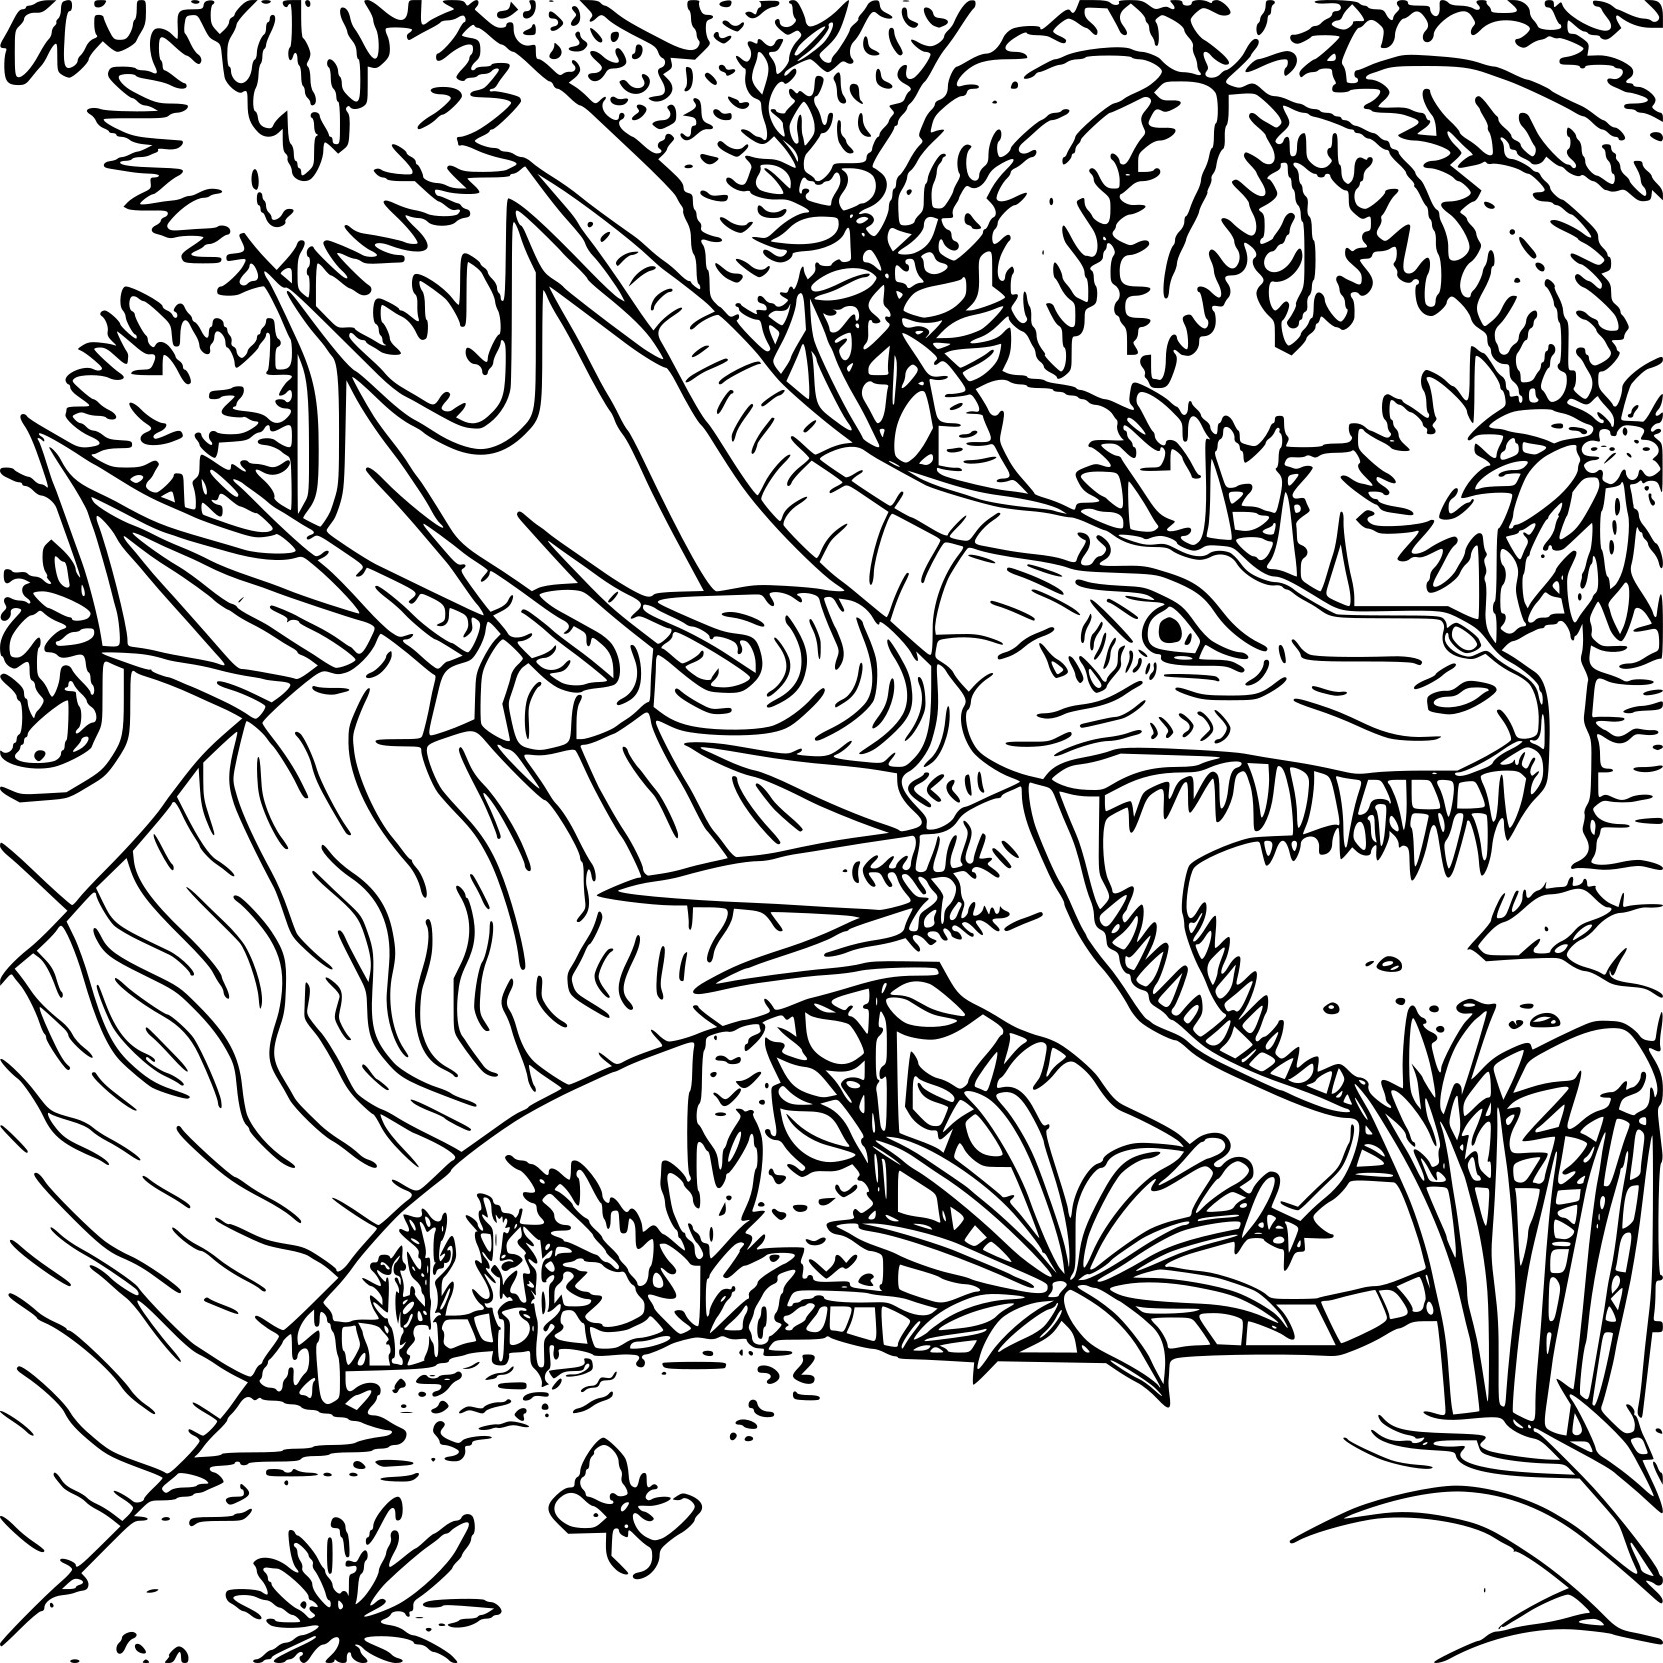 Coloriage Dinosaure Disney Élégant Images Coloriage Difficile Dinosaure à Imprimer Sur Coloriages Fo